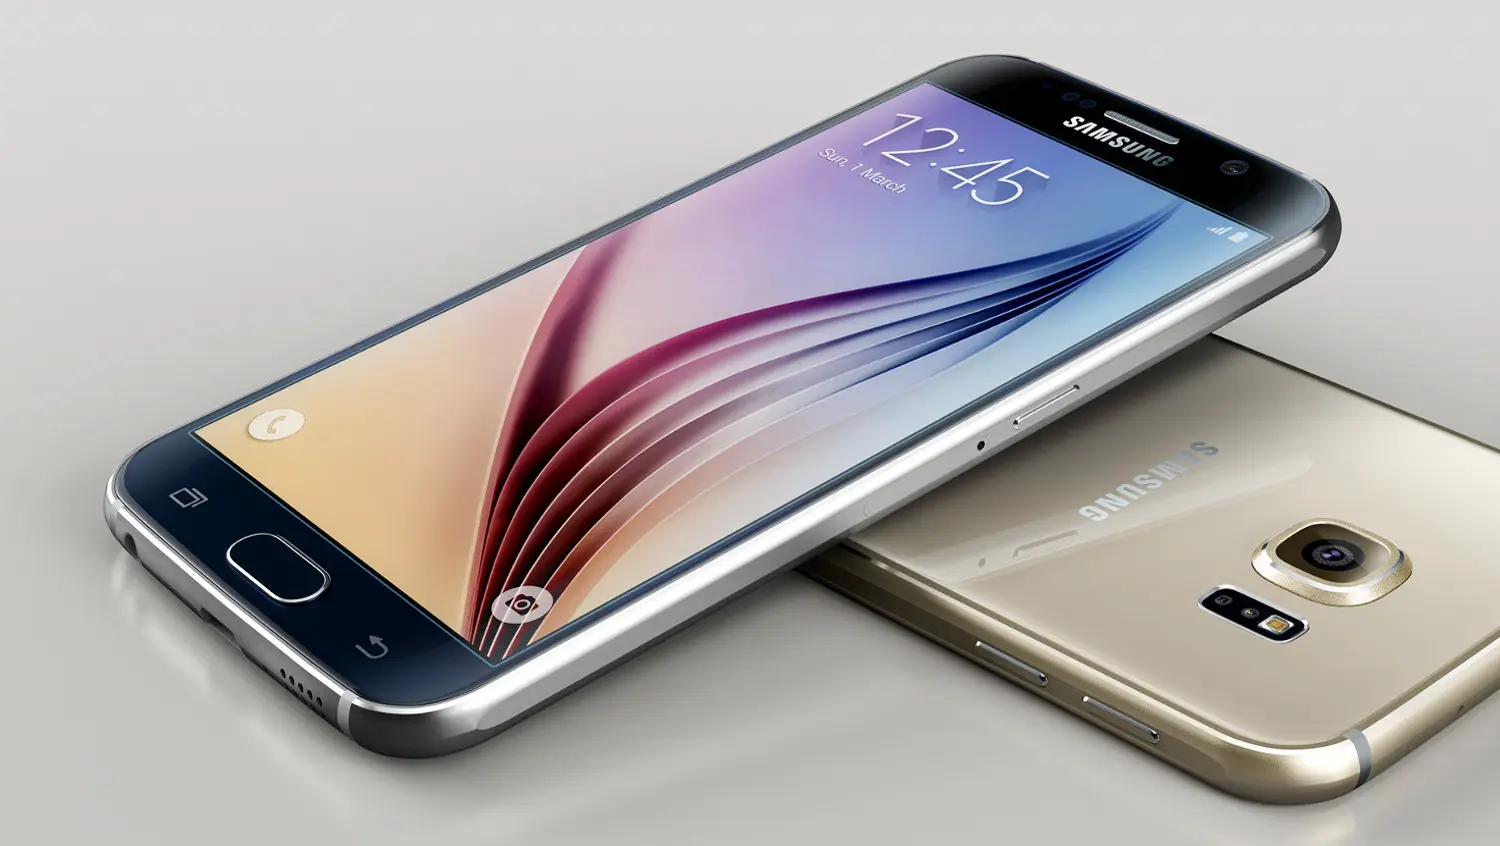 Sucesor del Galaxy S6 revela sus especificaciones técnicas